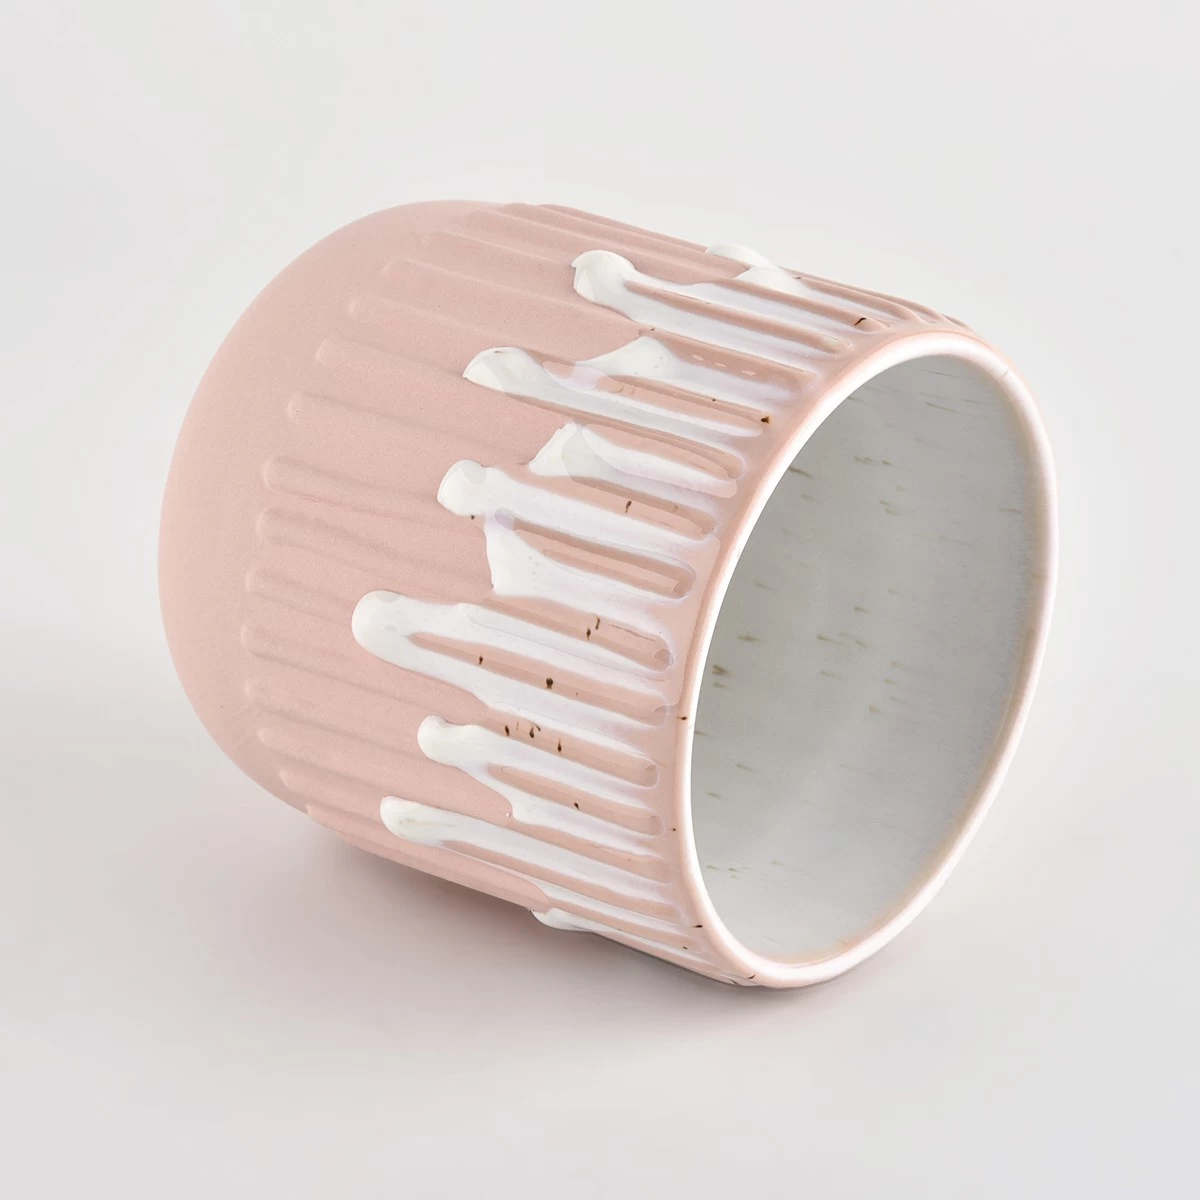 14oz ceramic candle holder pink frosting ceramic jars wholesale